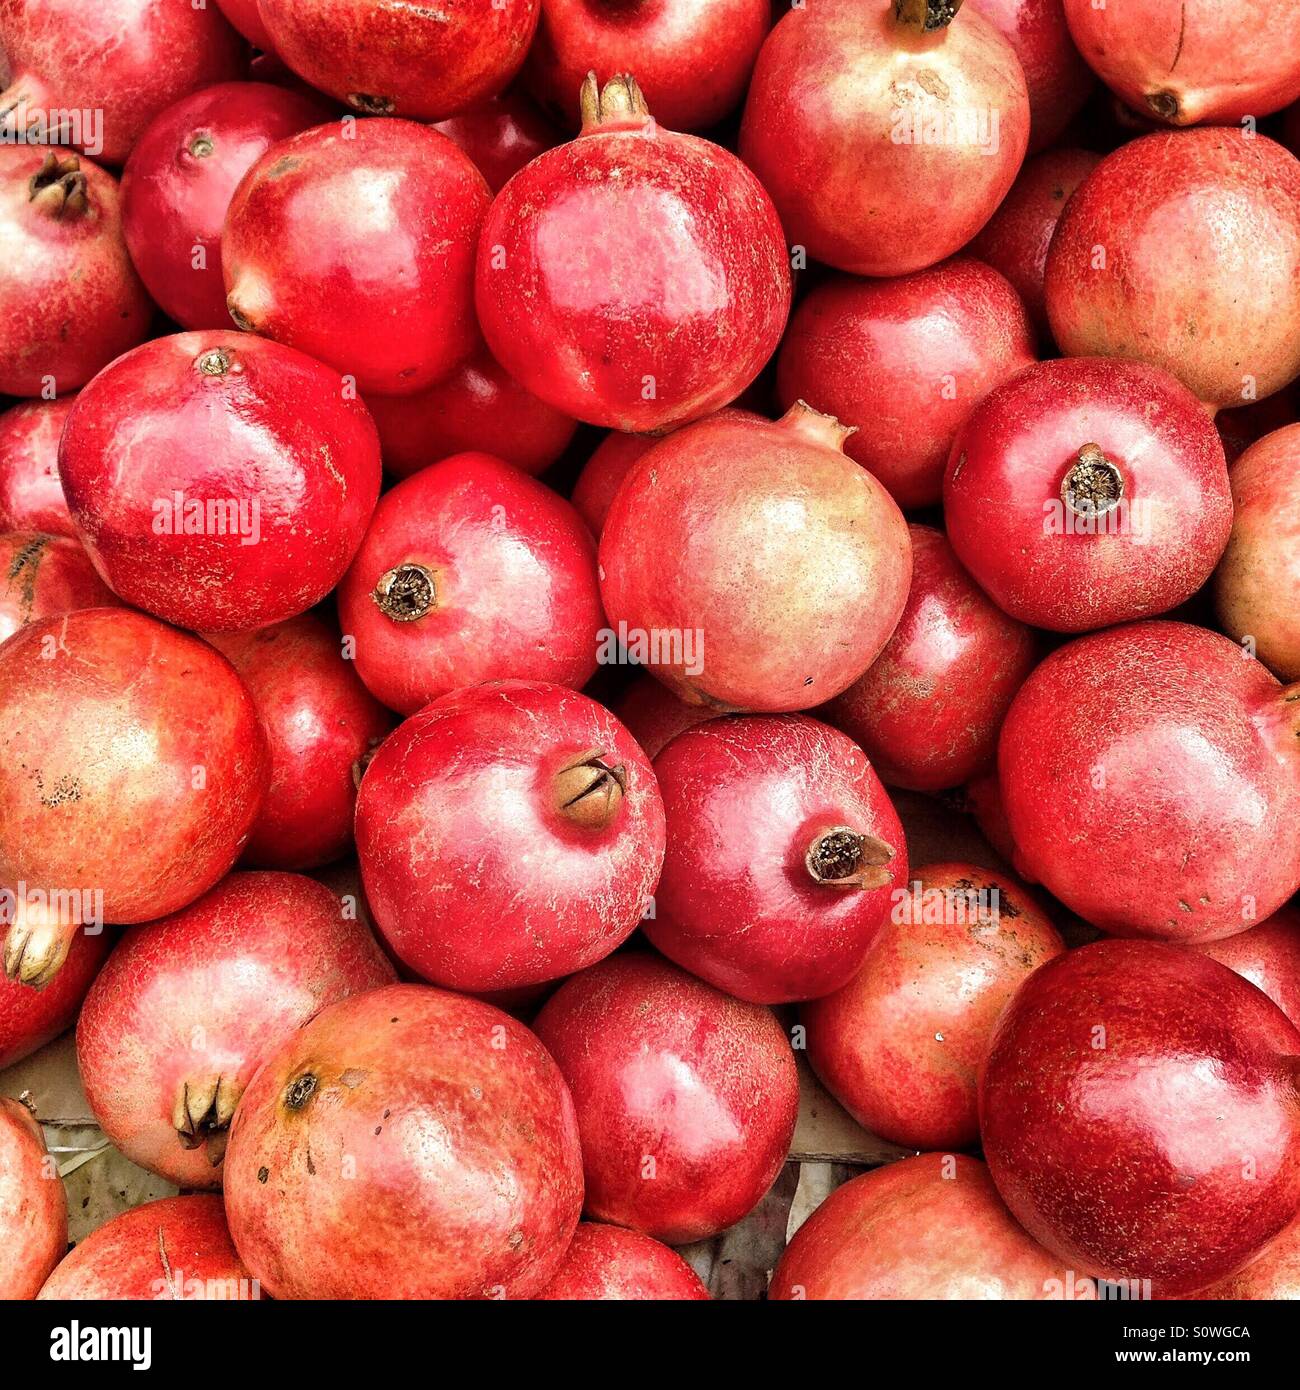 Pomegranates at the market Stock Photo